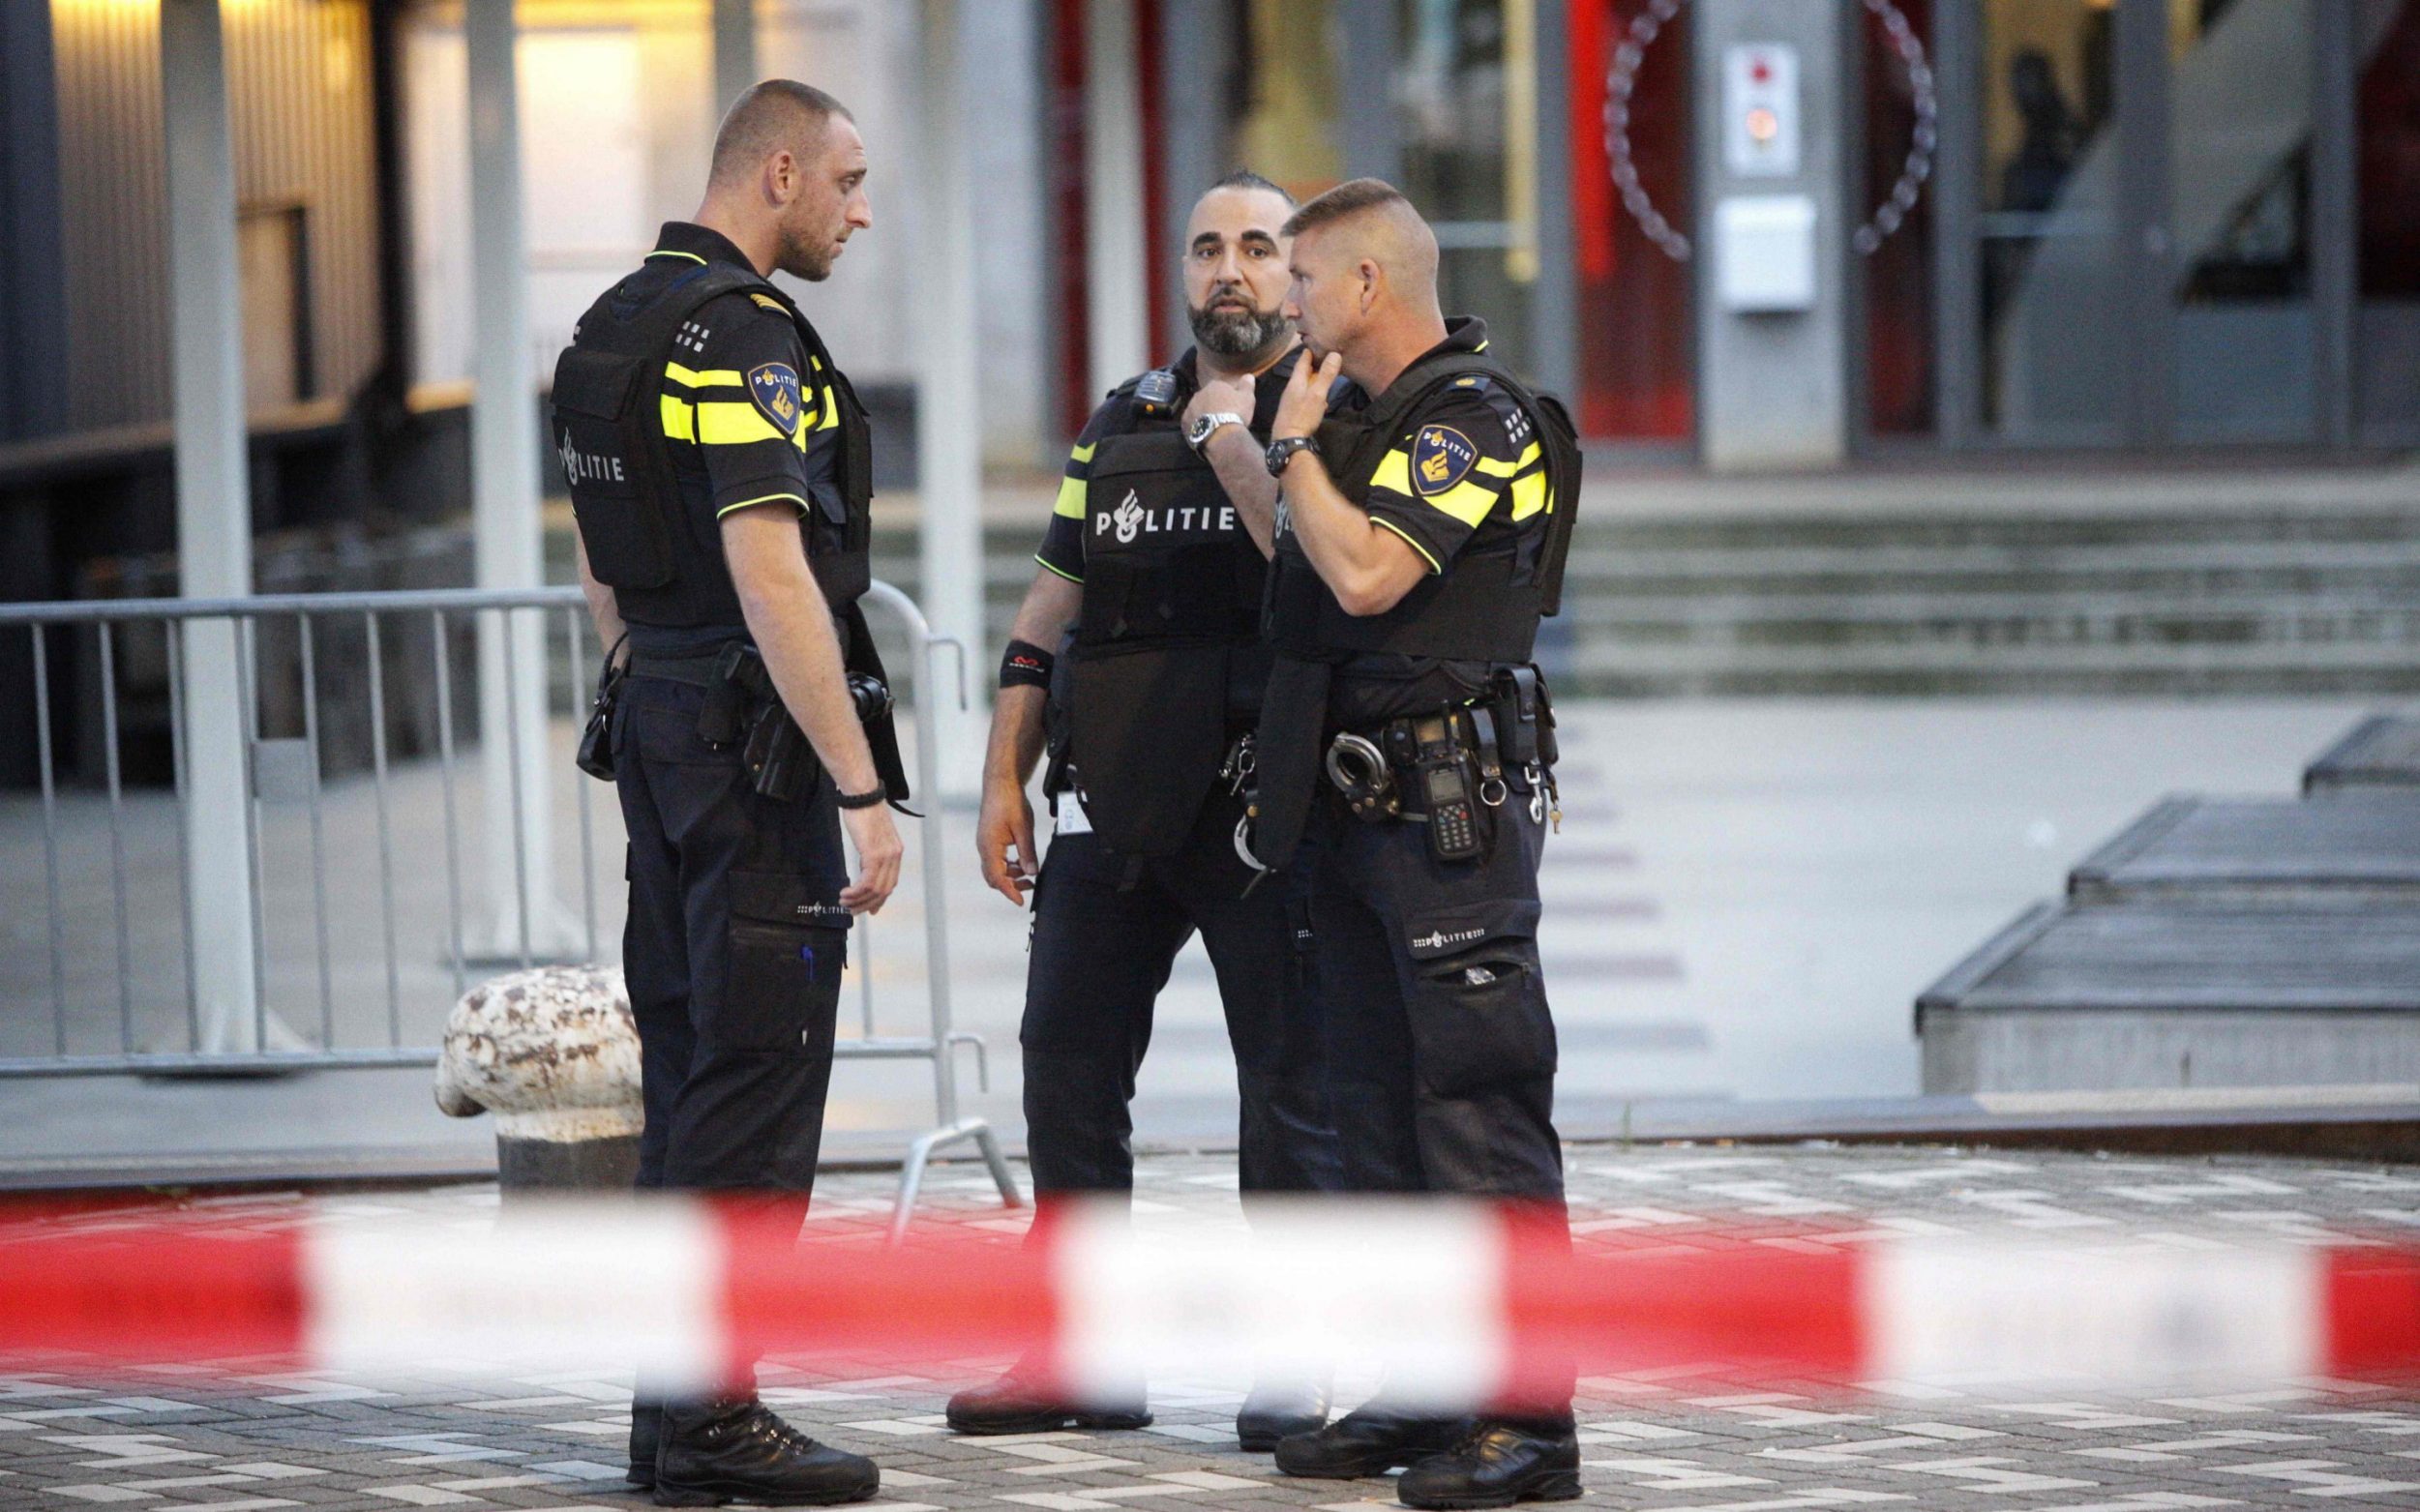 مكافحة الإرهاب - تحذيرات من هجمات قد يشنها "داعش" في أوروبا